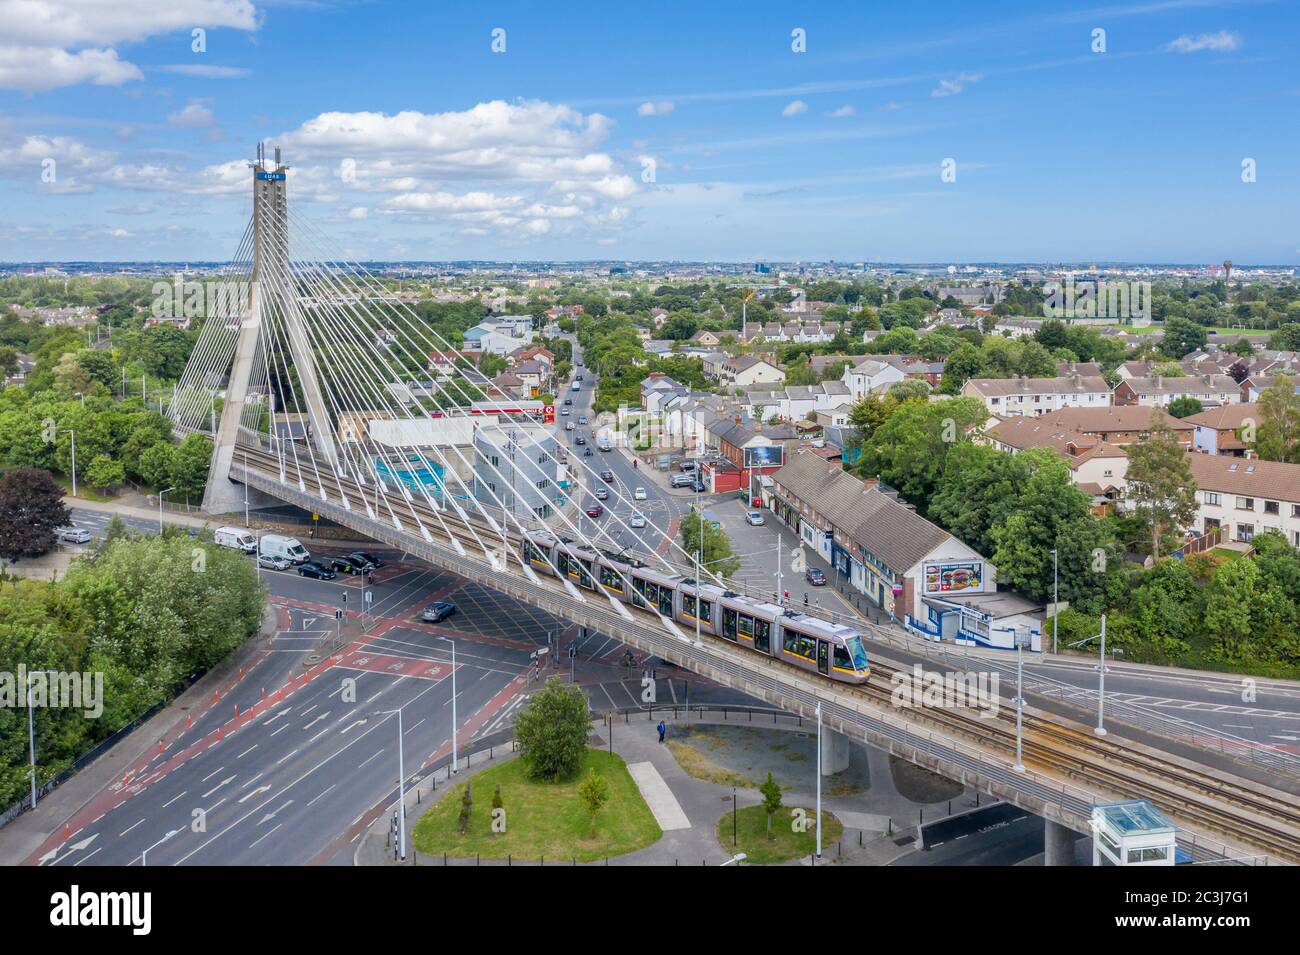 Le pont William Dargan est un pont à câbles à Dundrum, Dublin, en Irlande. Il transporte la ligne de métro LUAS Light Rail en traversant une jonction de route très fréquentée. Banque D'Images